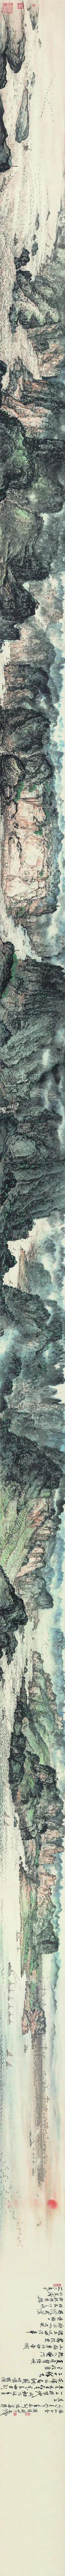 中国画144×364cm  1994年深圳市关山月美术馆藏中国=mc05黄永玉